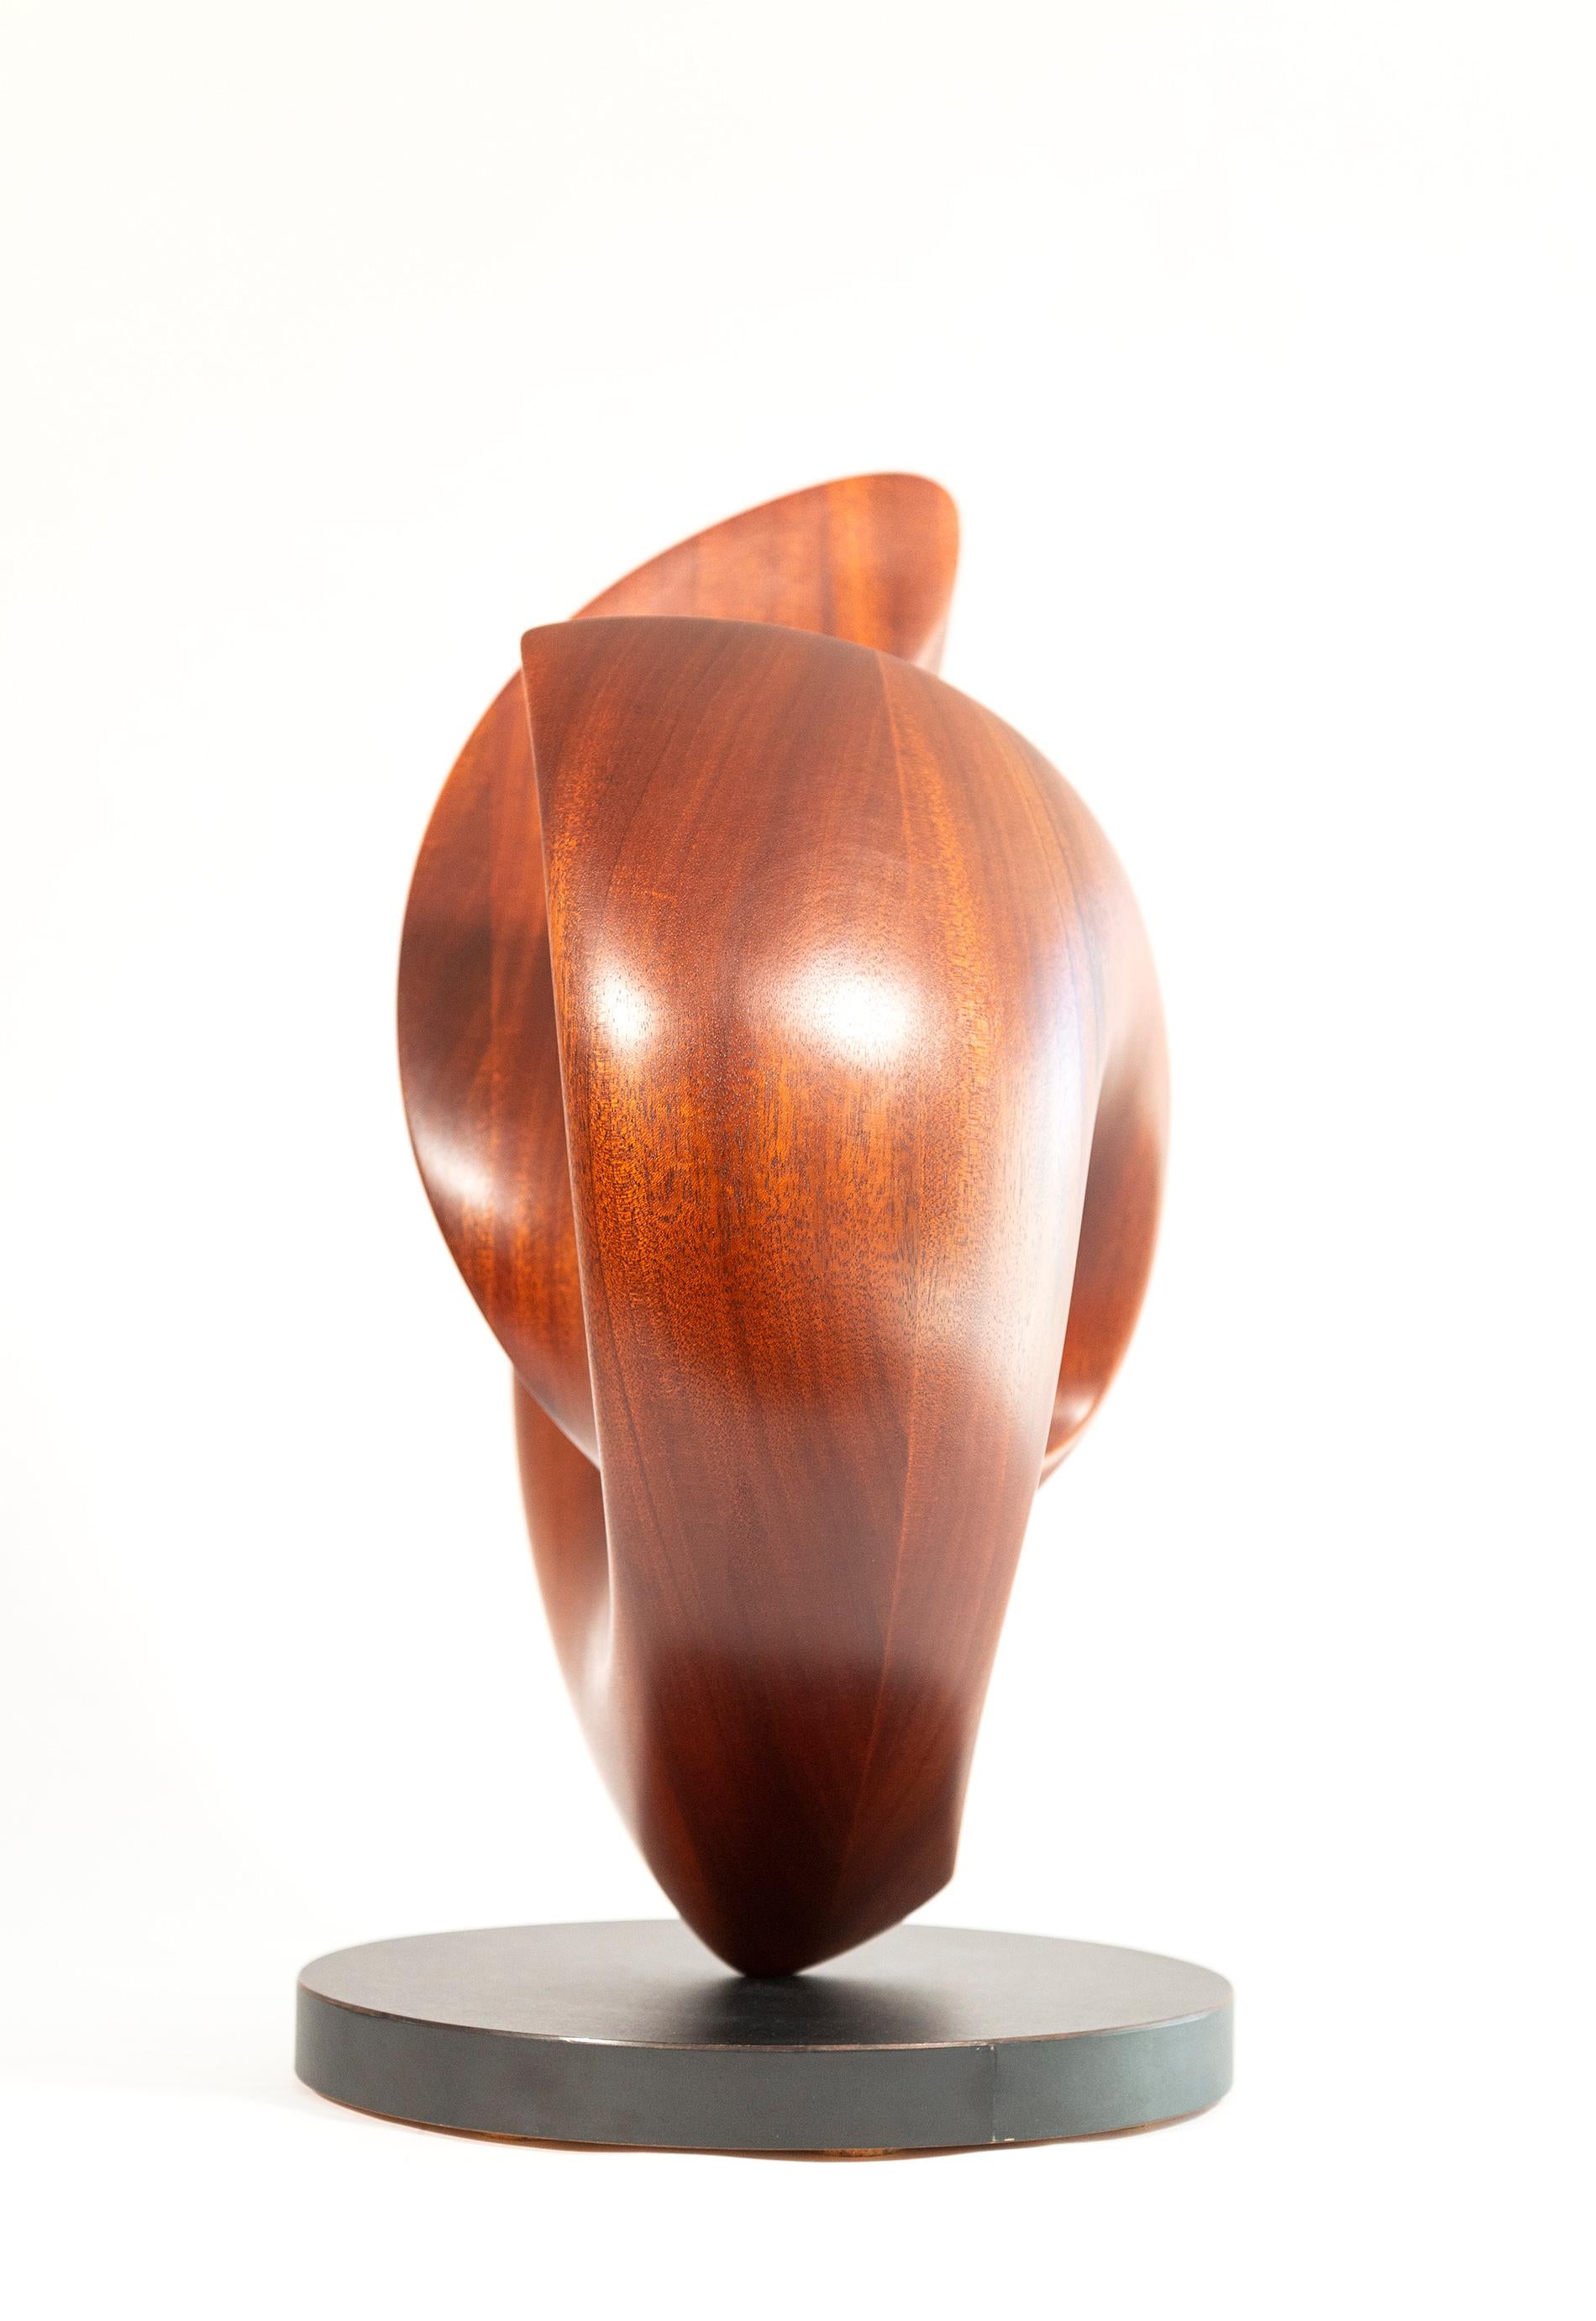 Les courbes gracieuses de cette sculpture contemporaine en acajou massif de David Chamberlain semblent imiter l'image d'un cœur. Sculptée à la main dans un seul morceau de ce bois rare, la forme abstraite est une boucle continue. Le grain